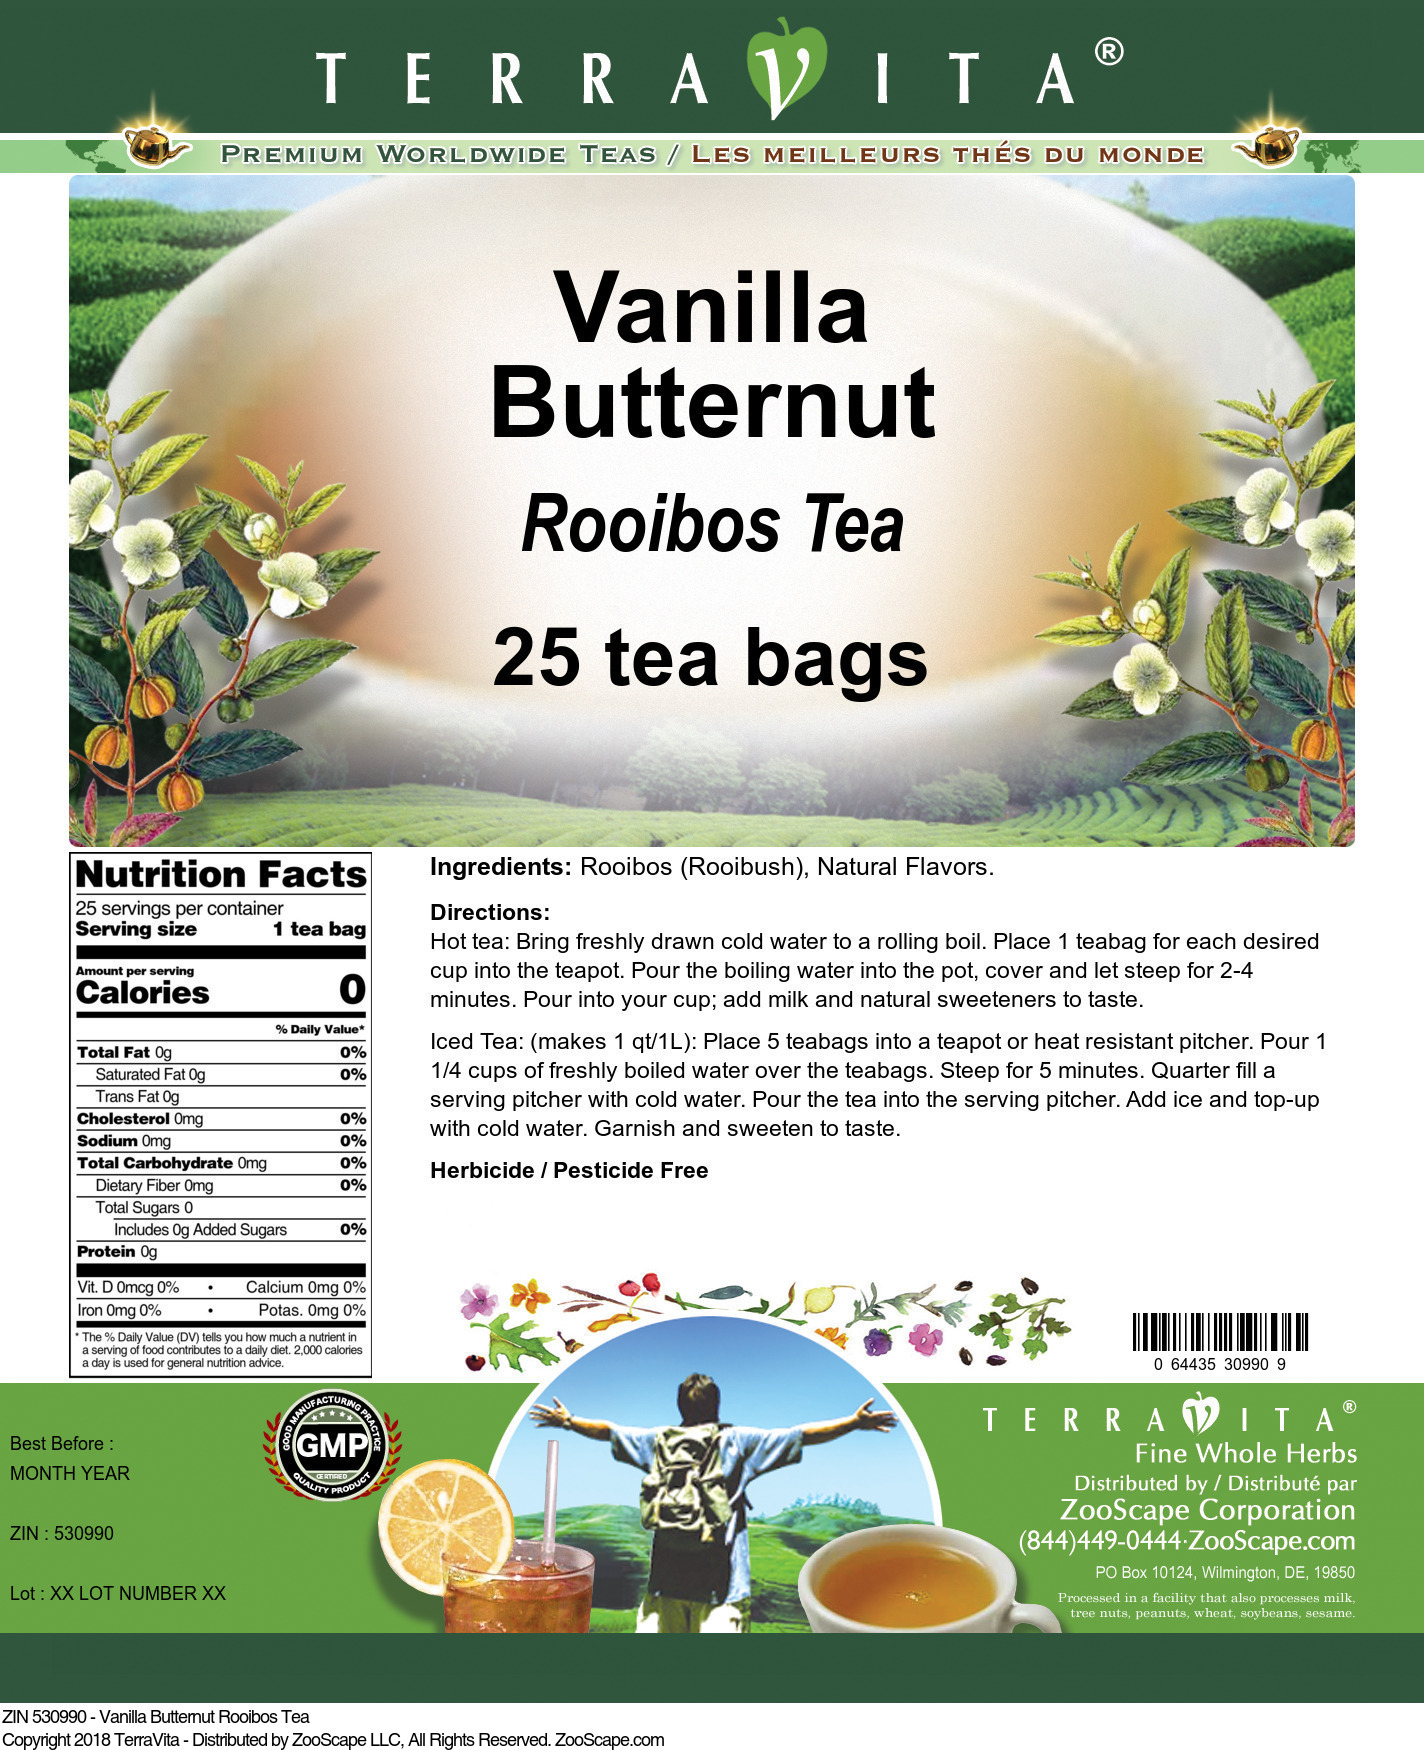 Vanilla Butternut Rooibos Tea - Label